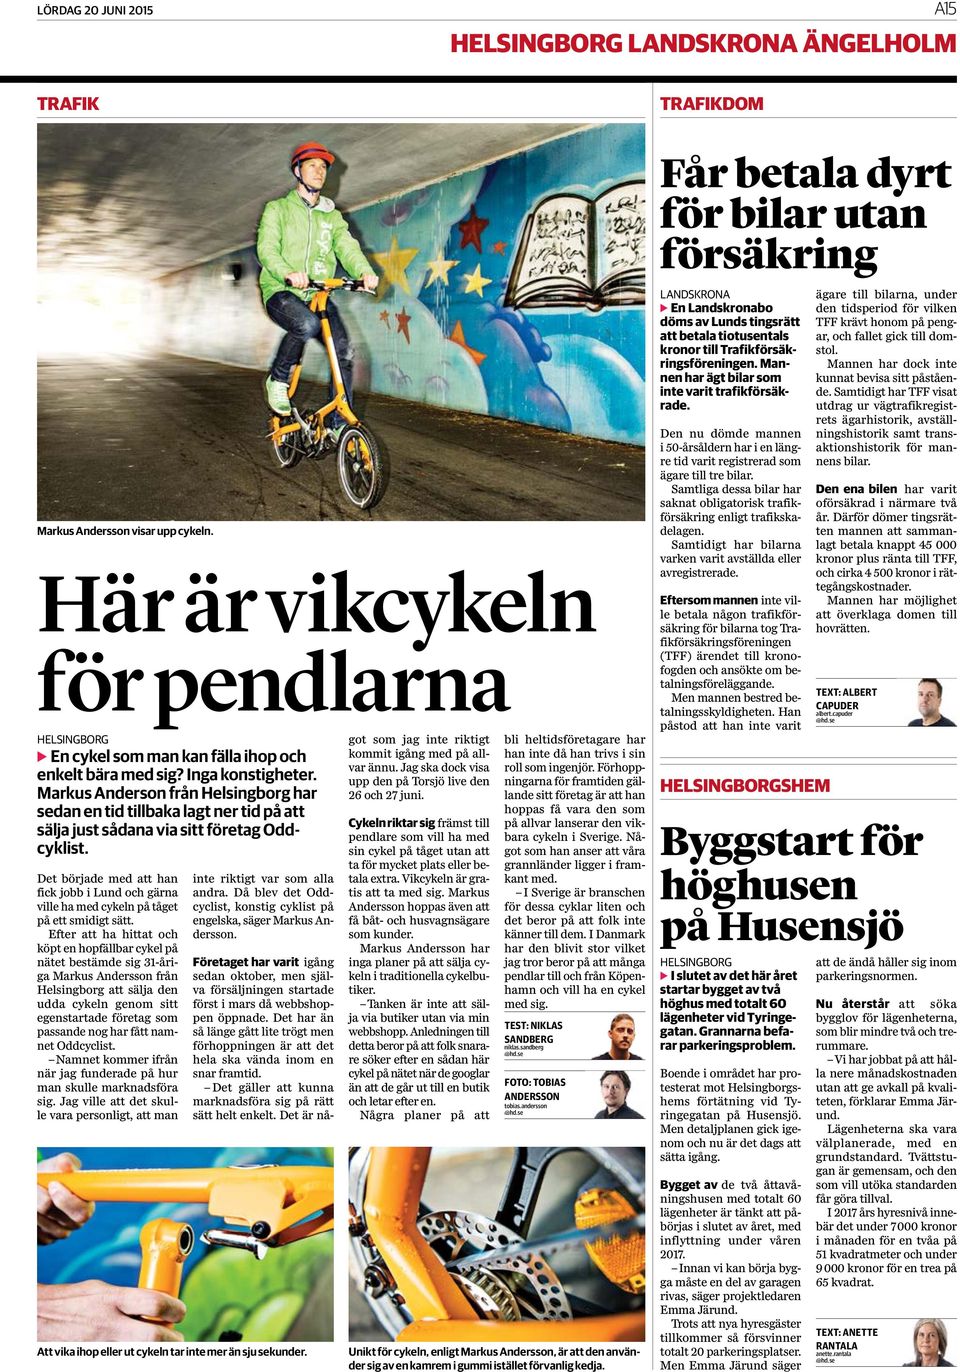 Markus Anderson från Helsingborg har sedan en tid tillbaka lagt ner tid på att sälja just sådana via sitt företag Oddcyklist.